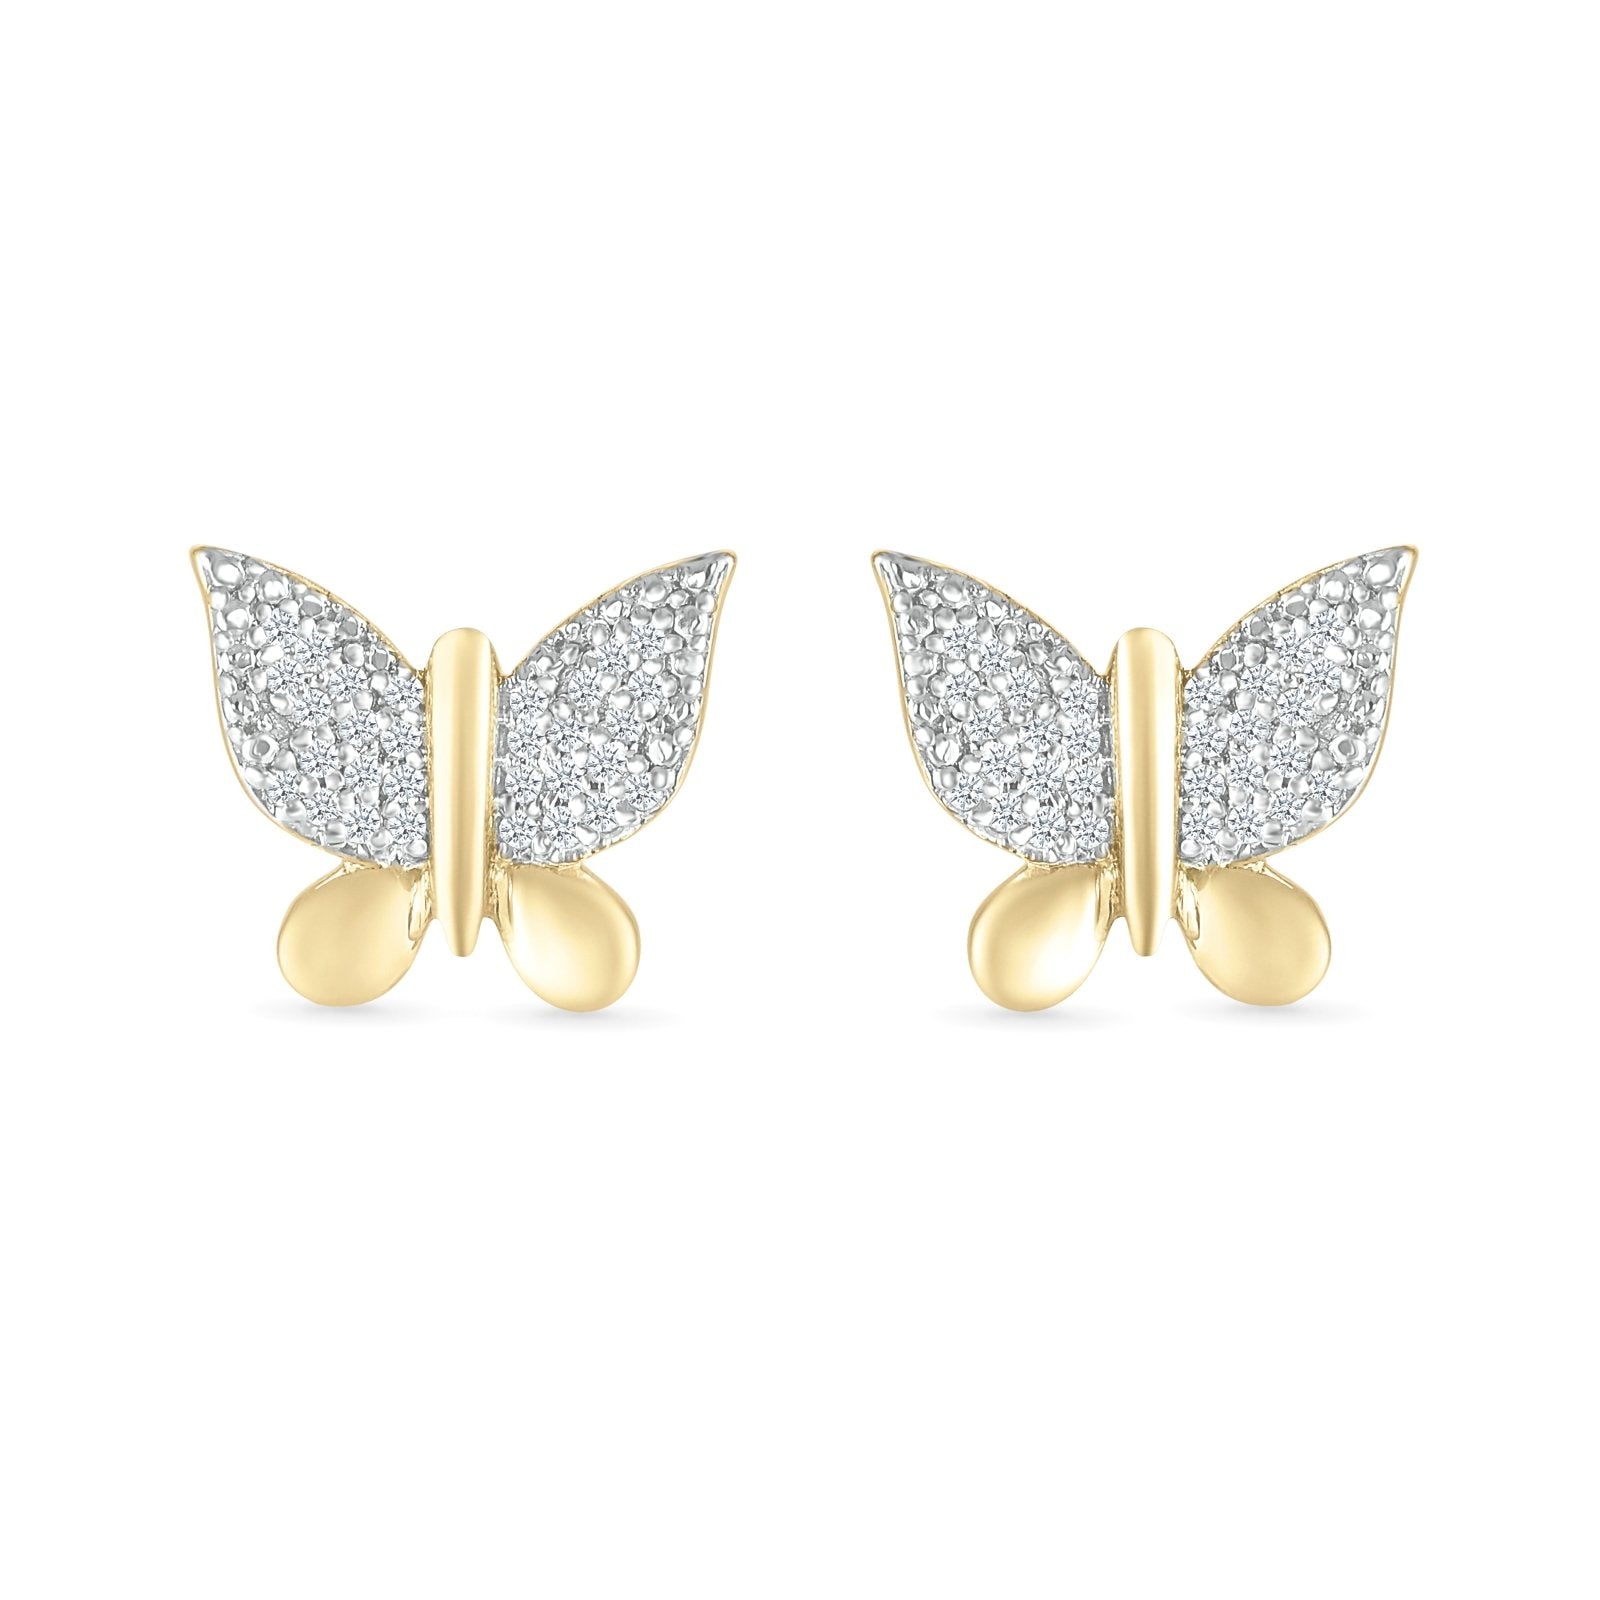 Diamond Butterfly Earrings Earrings Estella Collection #product_description# 32682 10k April Birthstone Colorless Gemstone #tag4# #tag5# #tag6# #tag7# #tag8# #tag9# #tag10#